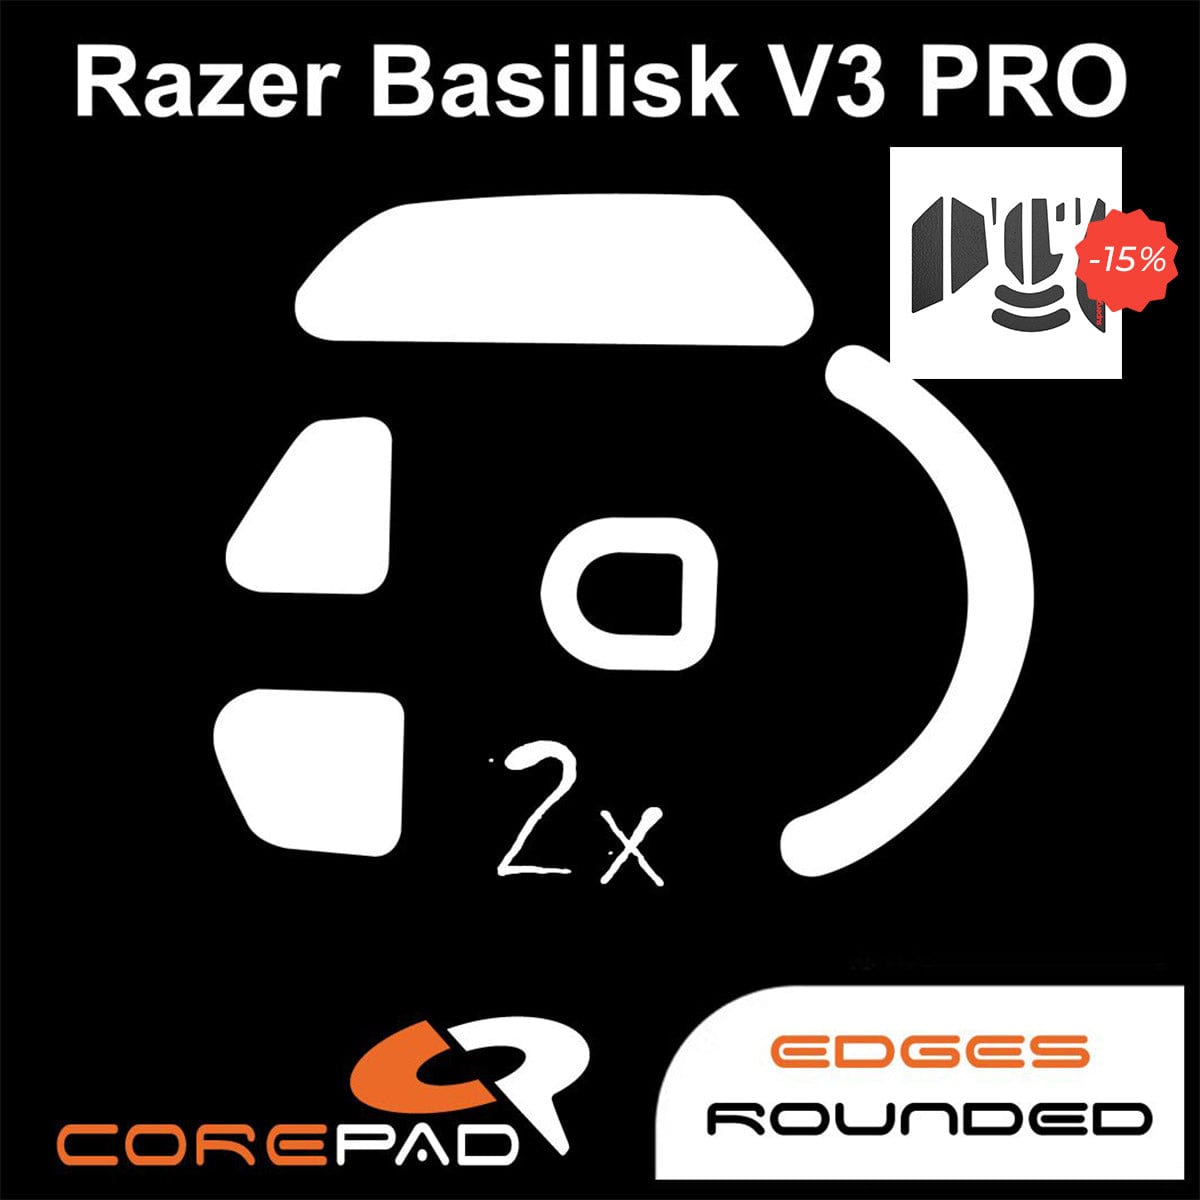 Bundle Feet Corepad + Grip tape Supergrip - Razer Basilisk V3 Pro